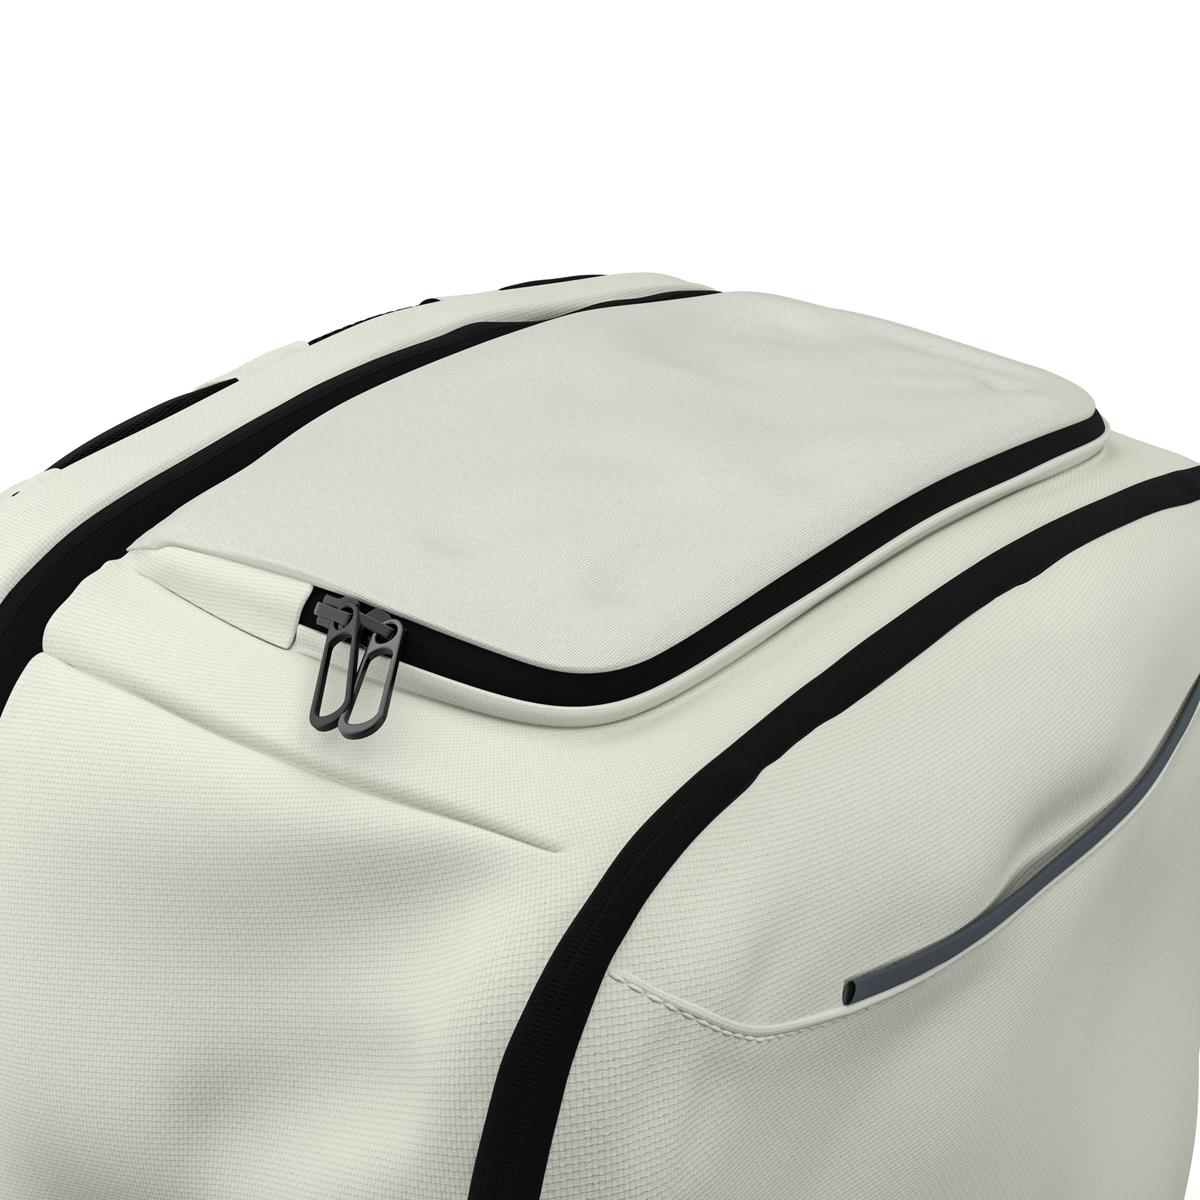 Buy Slab Case Backpack | Slab Case 2GO | Zion Cases